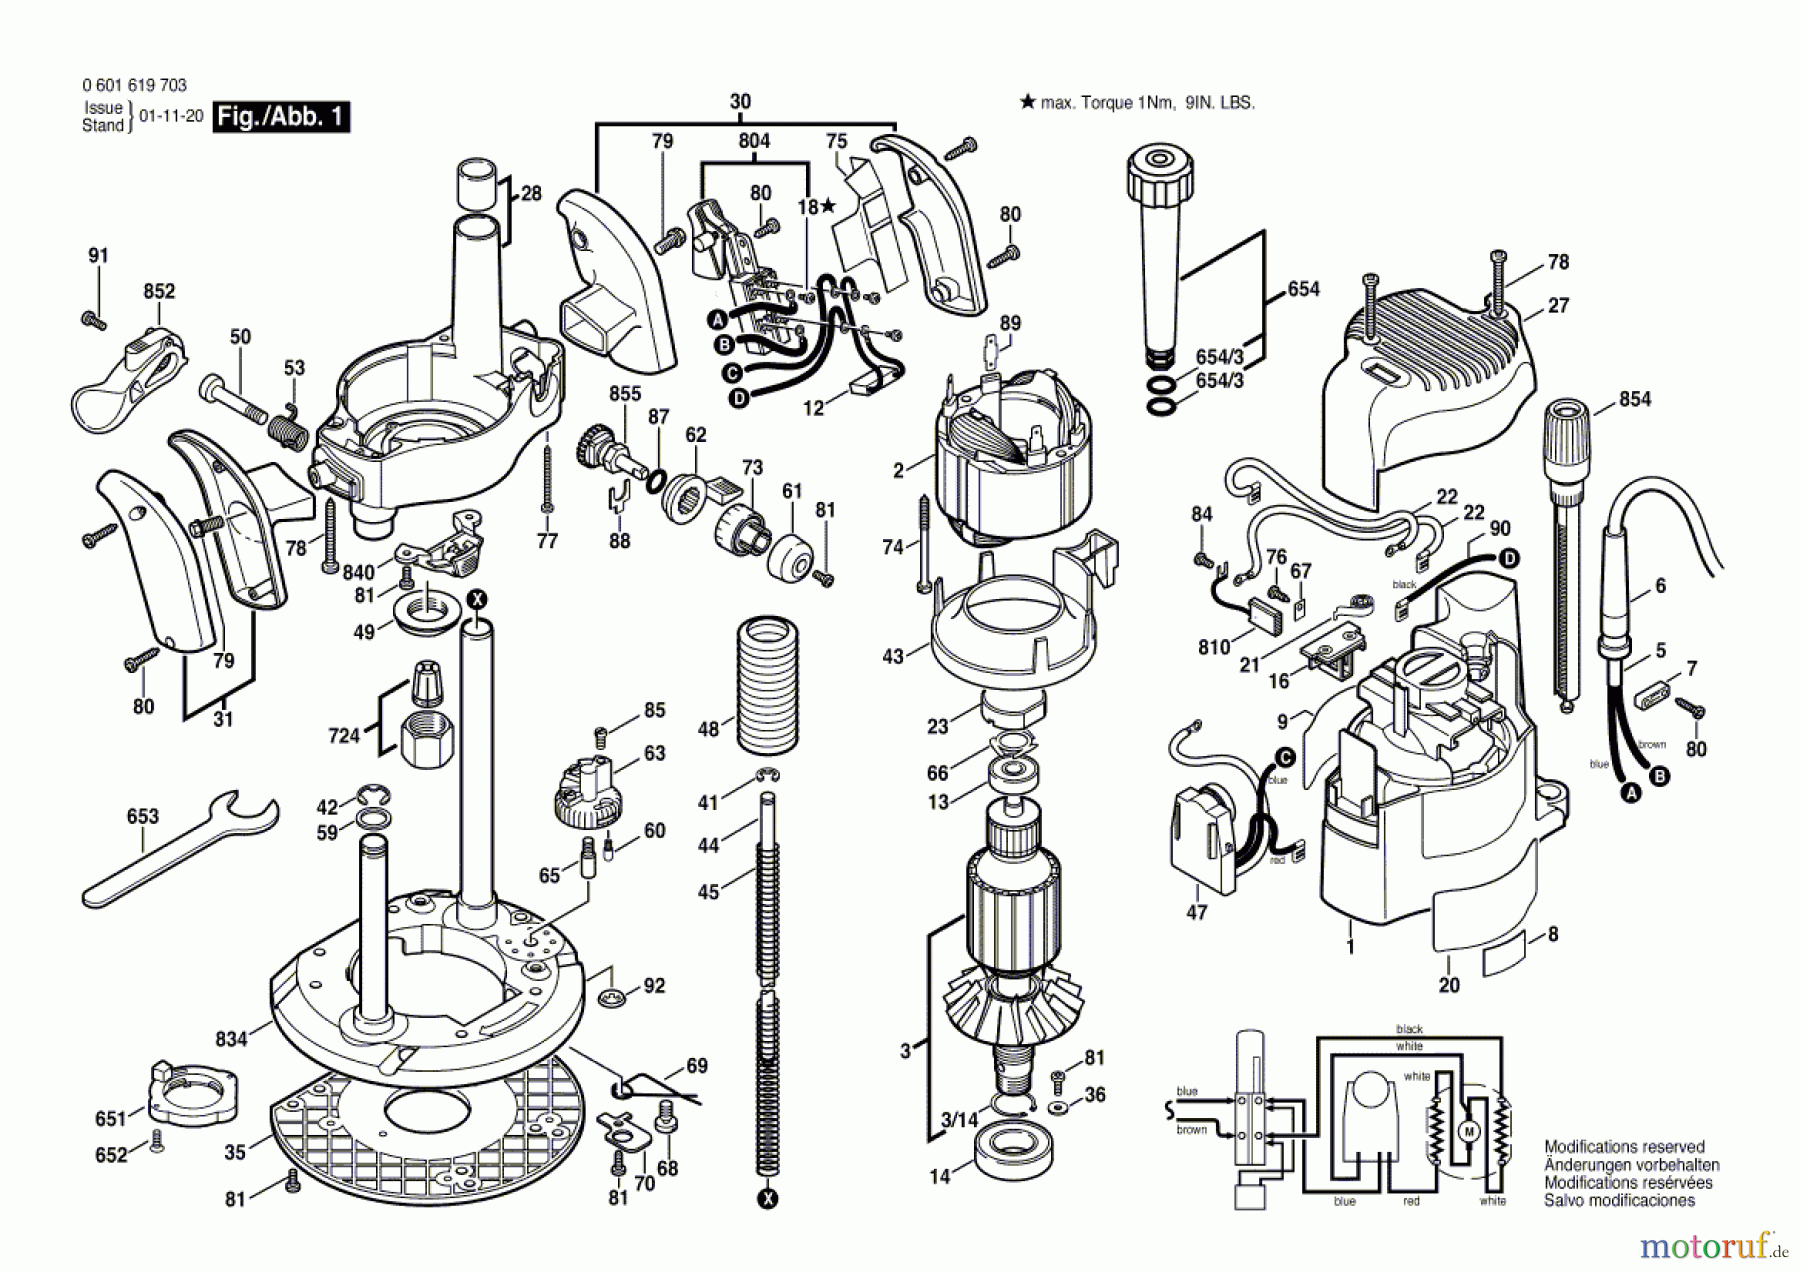  Bosch Werkzeug Oberfräse GOF 2000 CE Seite 1